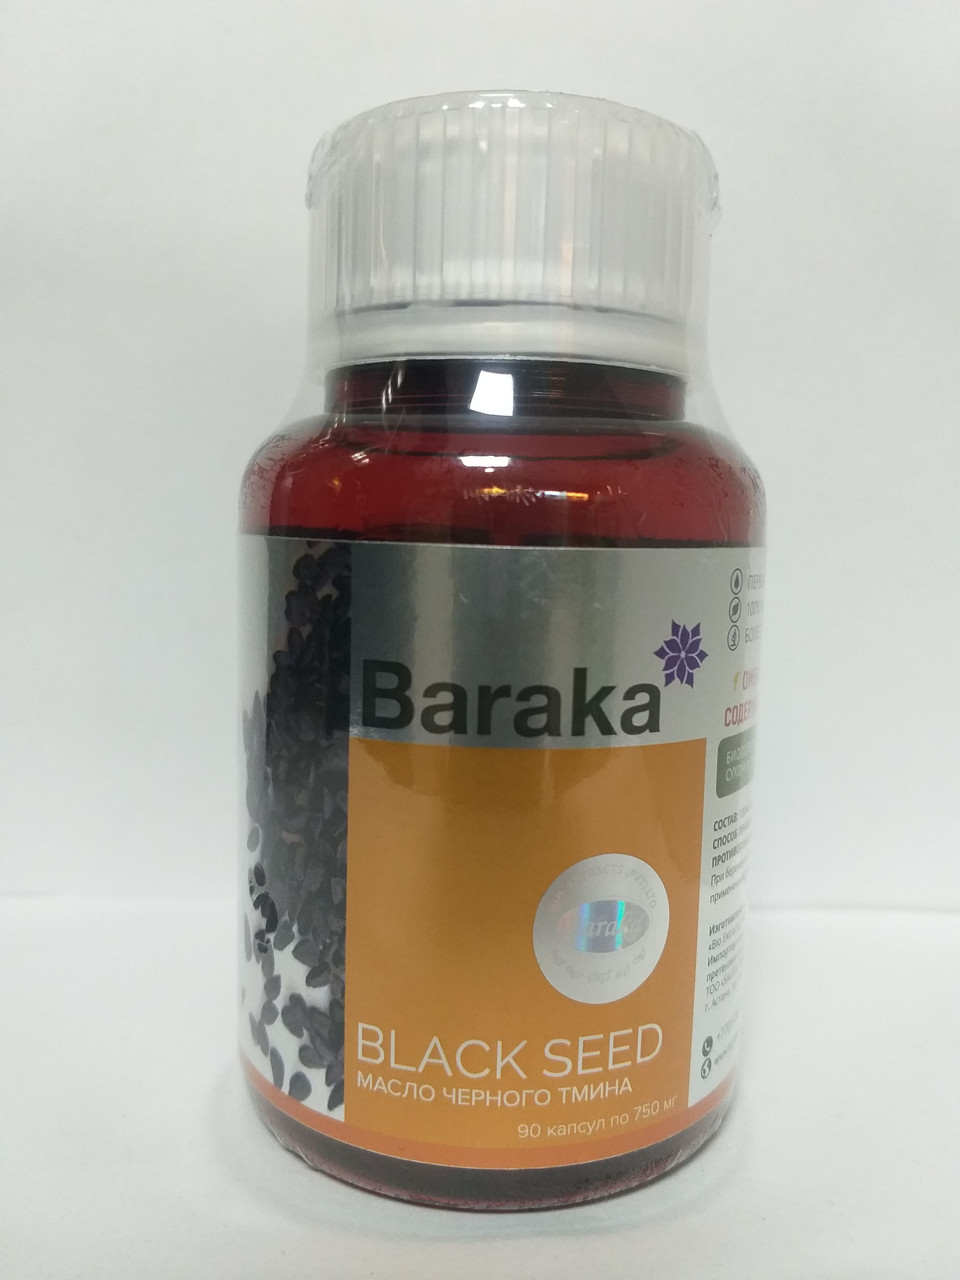 Натуральный препарат с маслом черного тмина в капсулах, Барака, 90 капсул, фото 1